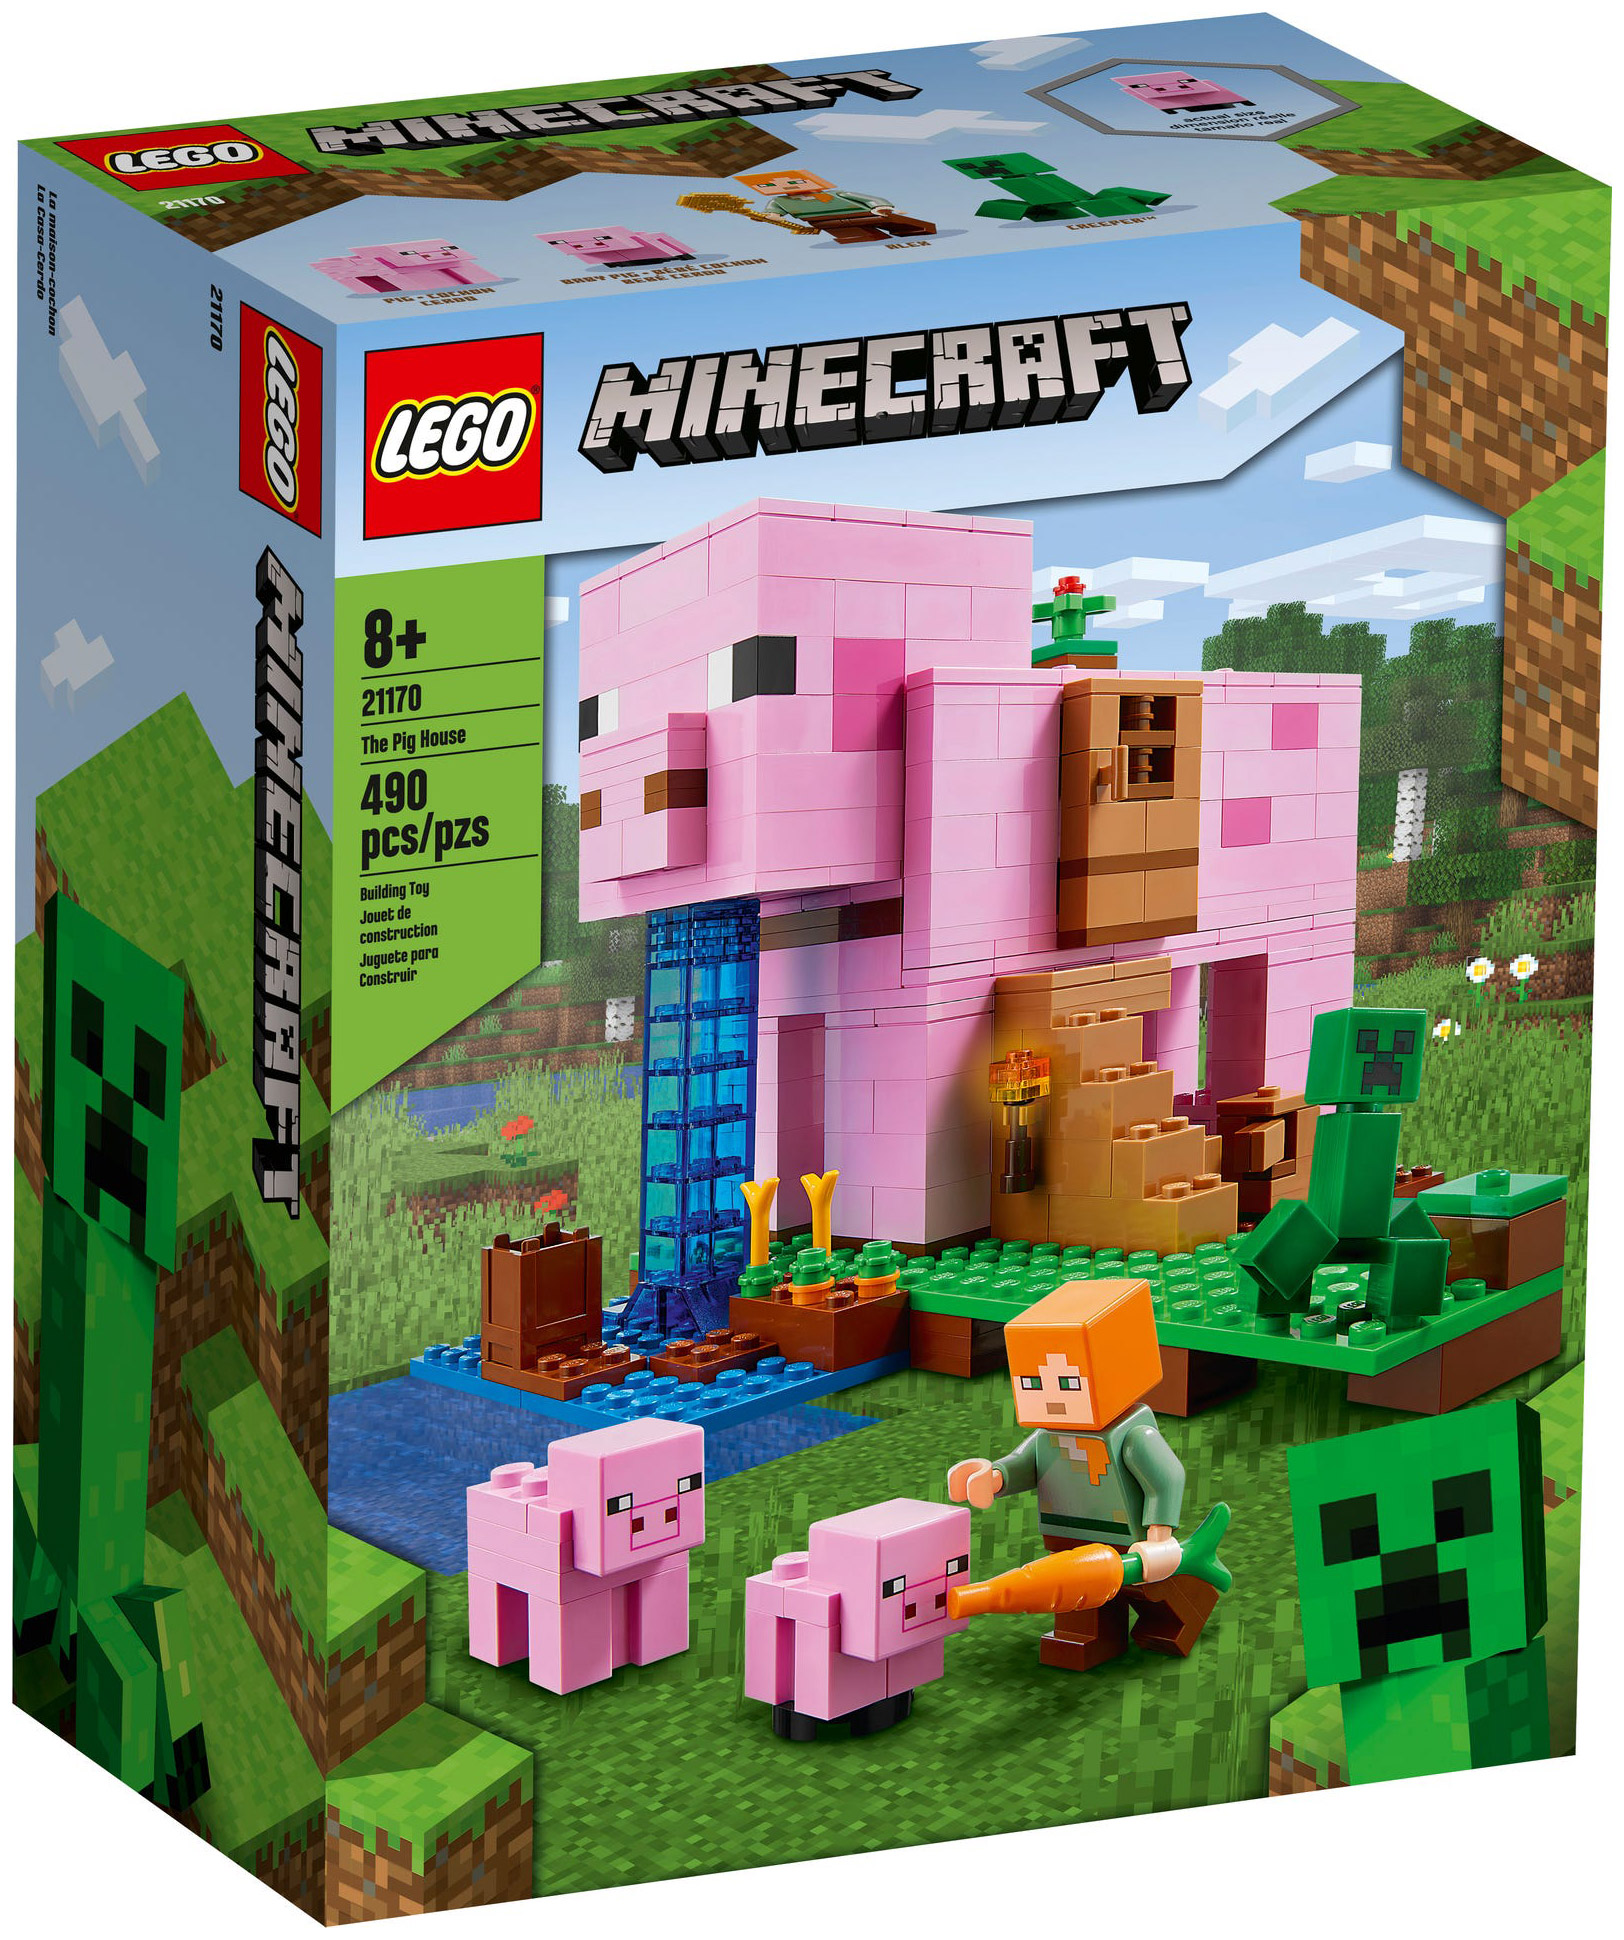 Le portail en ruine LEGO Minecraft 21172 - La Grande Récré